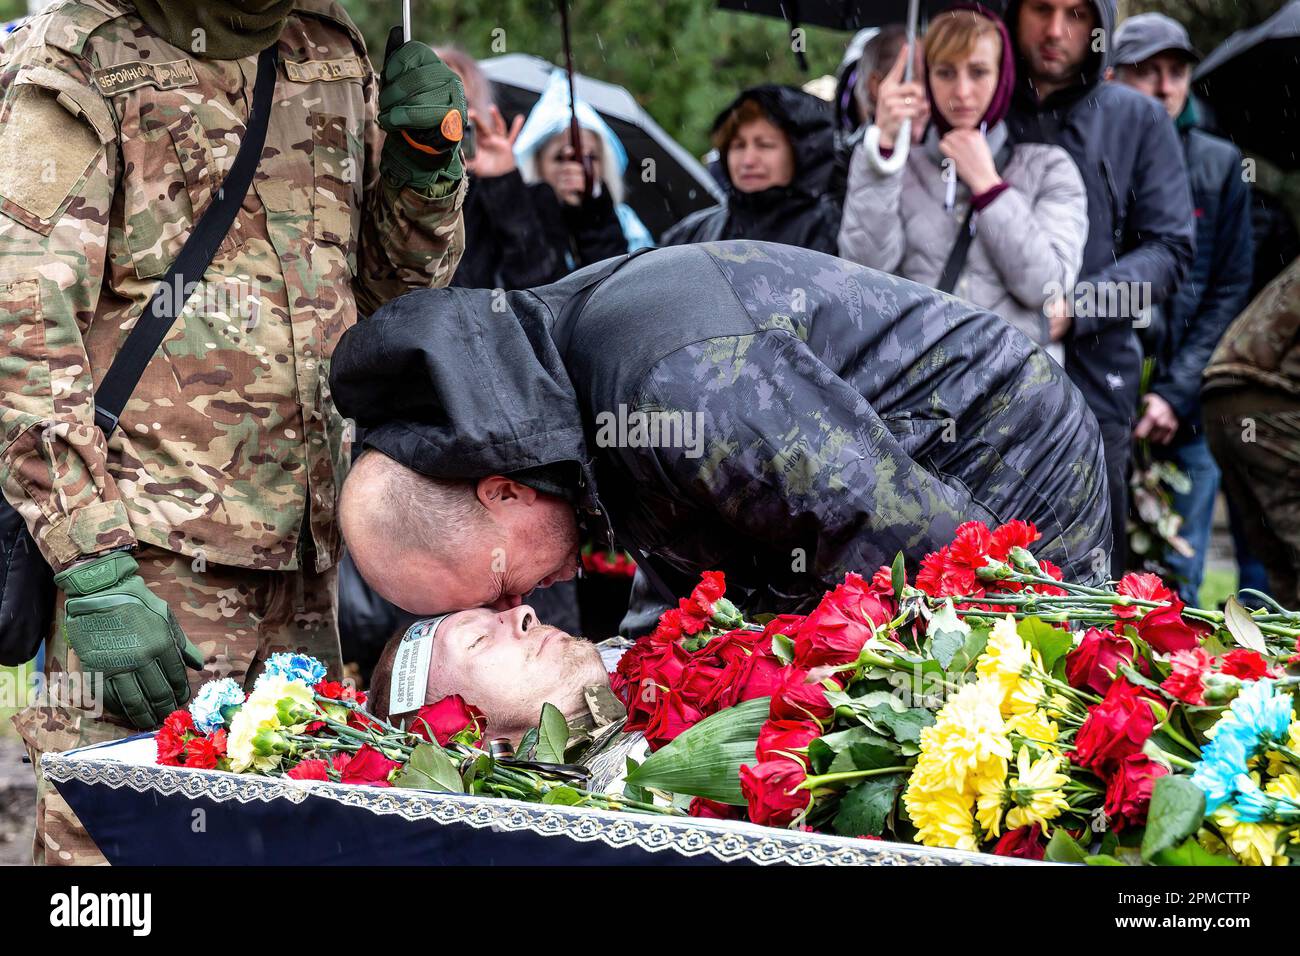 (NOTA PER I REDATTORI: L'immagine raffigura la morte) Un amico paga rispetto durante un funerale di Evgeny Yakovlev, 42 anni, un soldato ucciso dalle forze russe sul fronte orientale ucraino in un combattimento, al cimitero di Lisove a Kyiv. Il cimitero di Lisove è il luogo in cui sono sepolti la maggior parte degli uomini dell'esercito caduti di Kiev. Poiché l'invasione su larga scala dell'Ucraina da parte delle forze russe continua, la lotta nell'est dell'Ucraina causa un tasso di incidenti molto elevato, anche se i numeri esatti sono sconosciuti. L'Ucraina si prepara ad un'offensiva primaverile per riprendere la terra occupata dalla Russia. Foto Stock